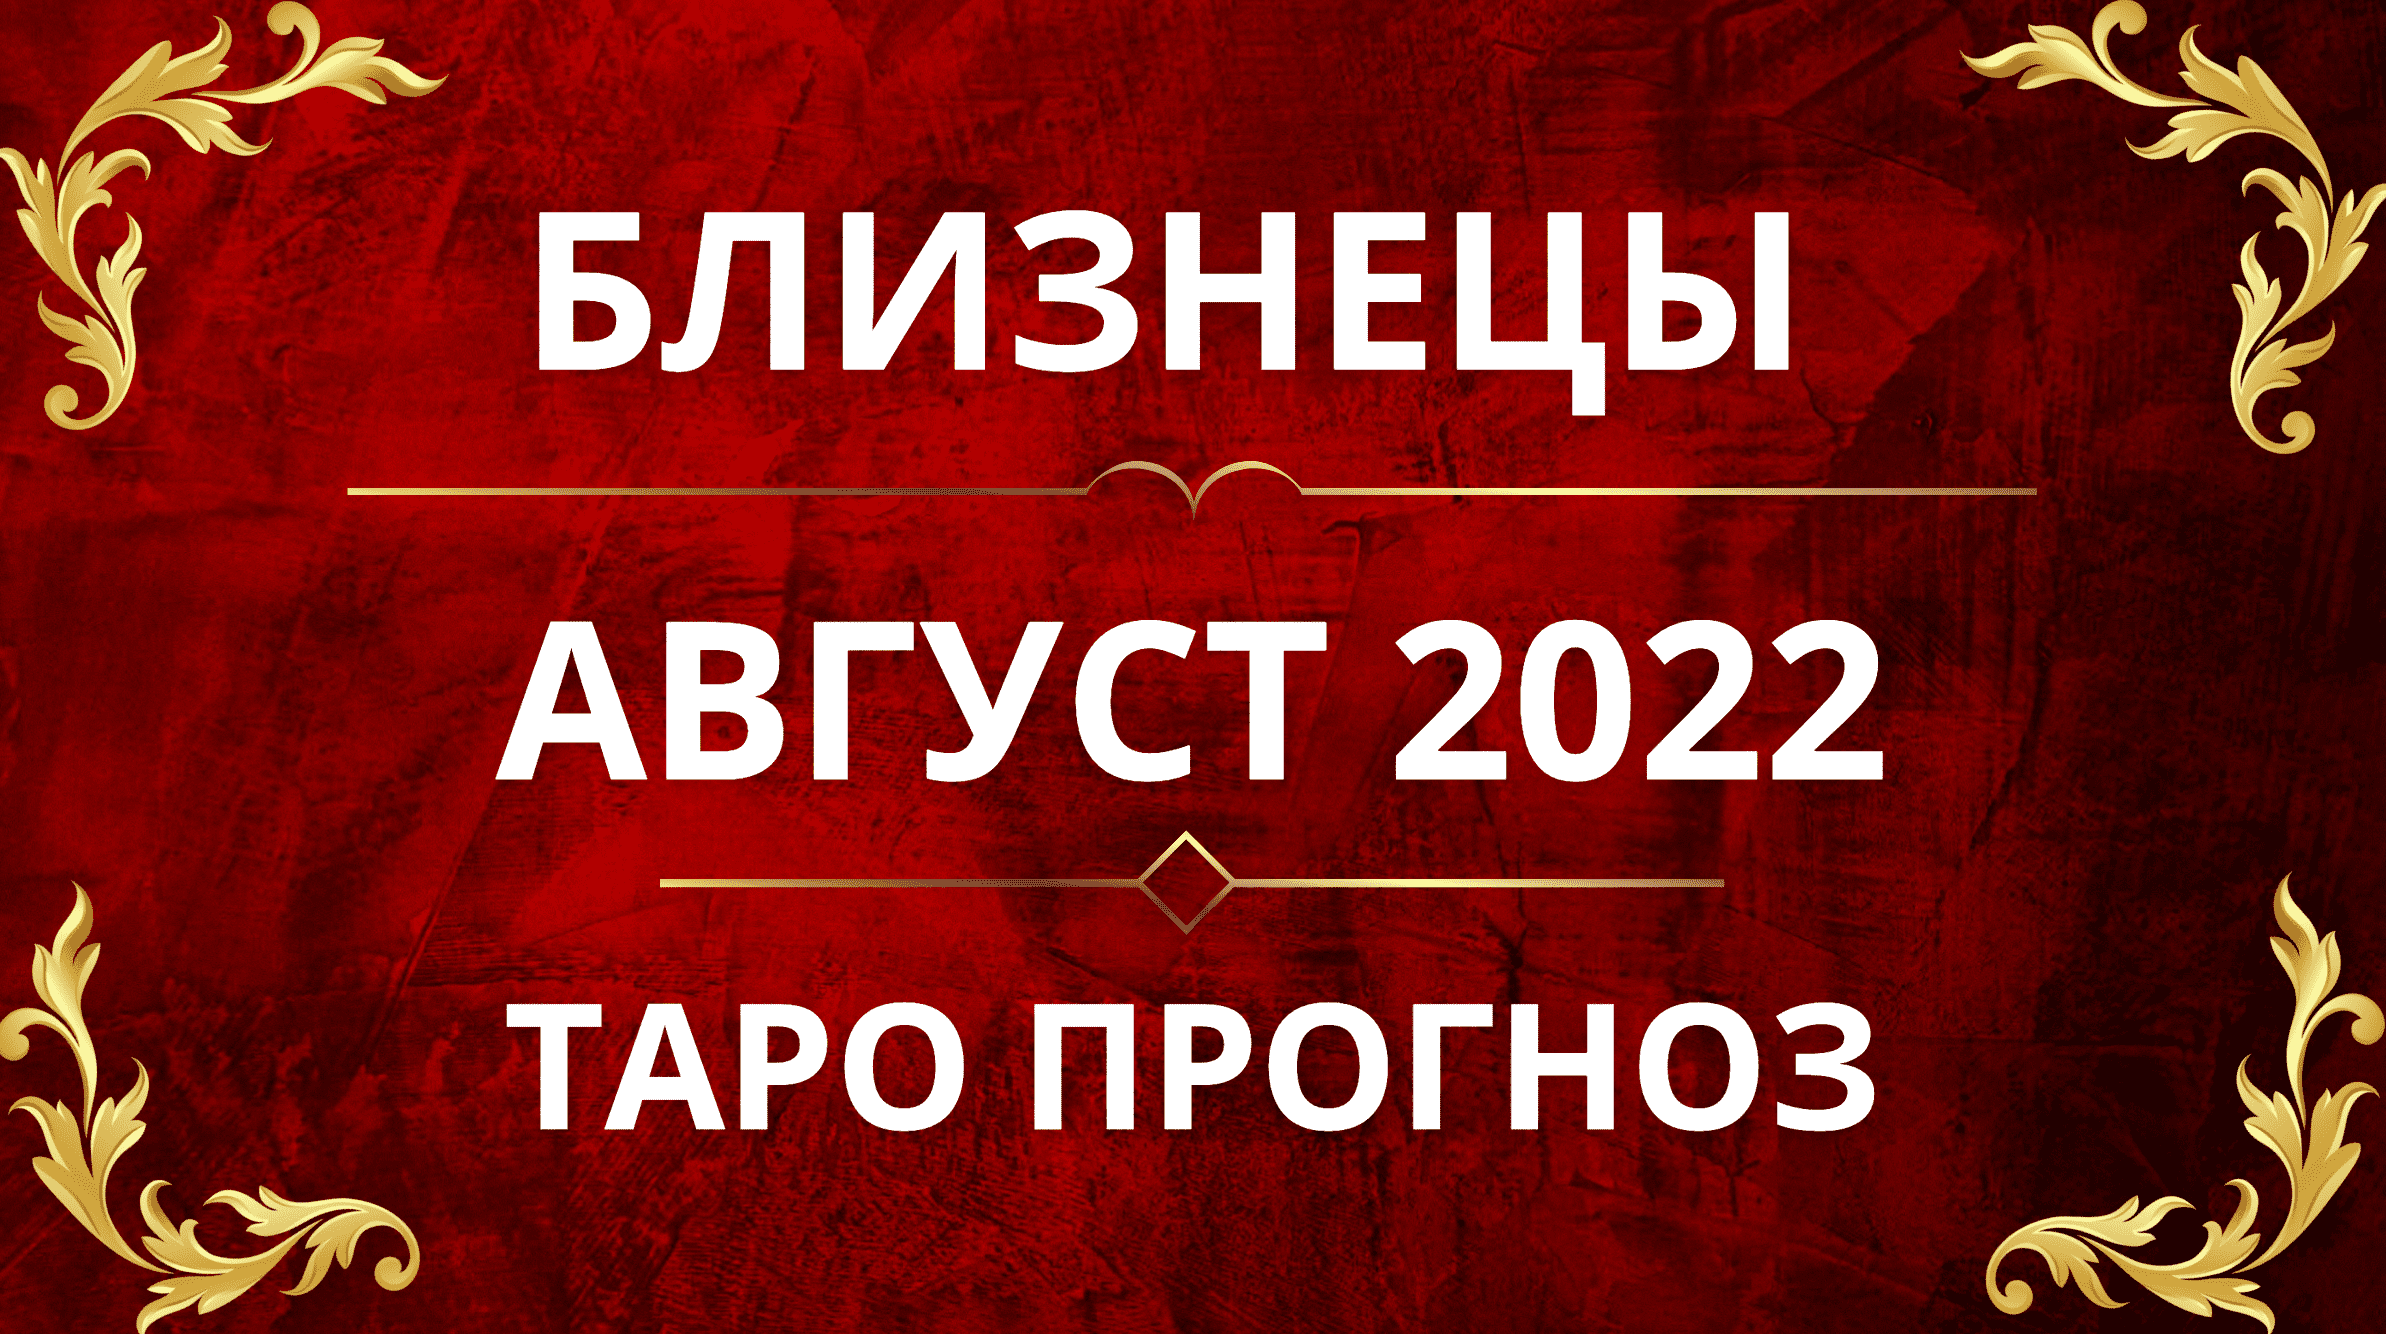 ♊️БЛИЗНЕЦЫ - ПРОГНОЗ НА АВГУСТ 2022!!❤️🔥😍